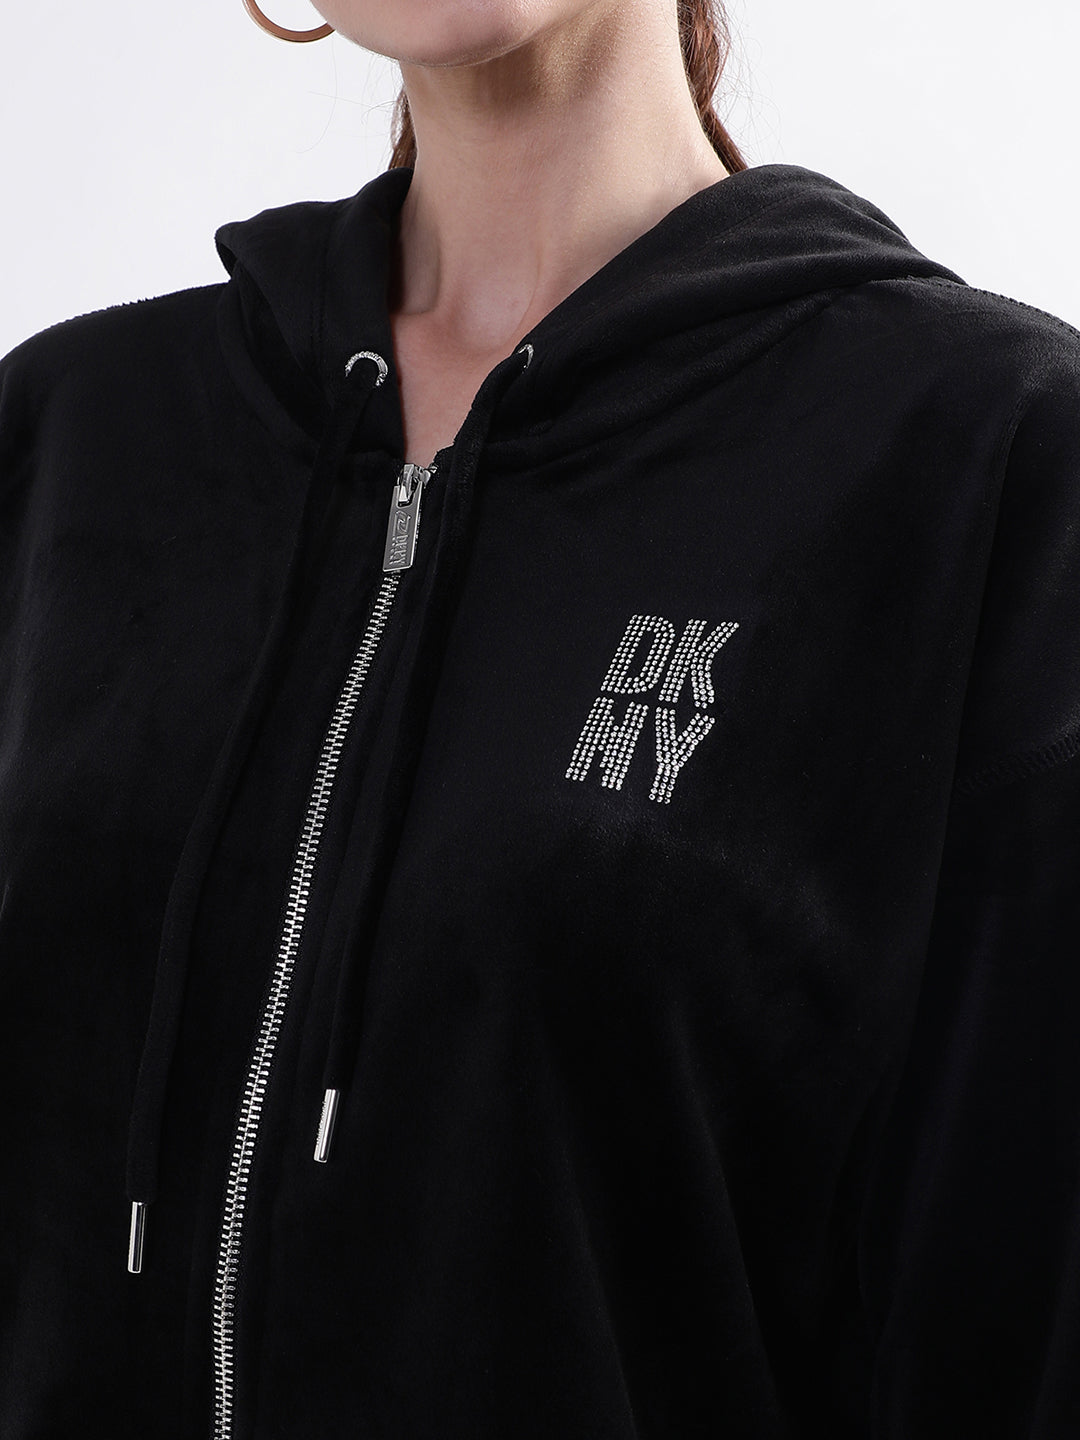 DKNY Women Black Sweatshirt